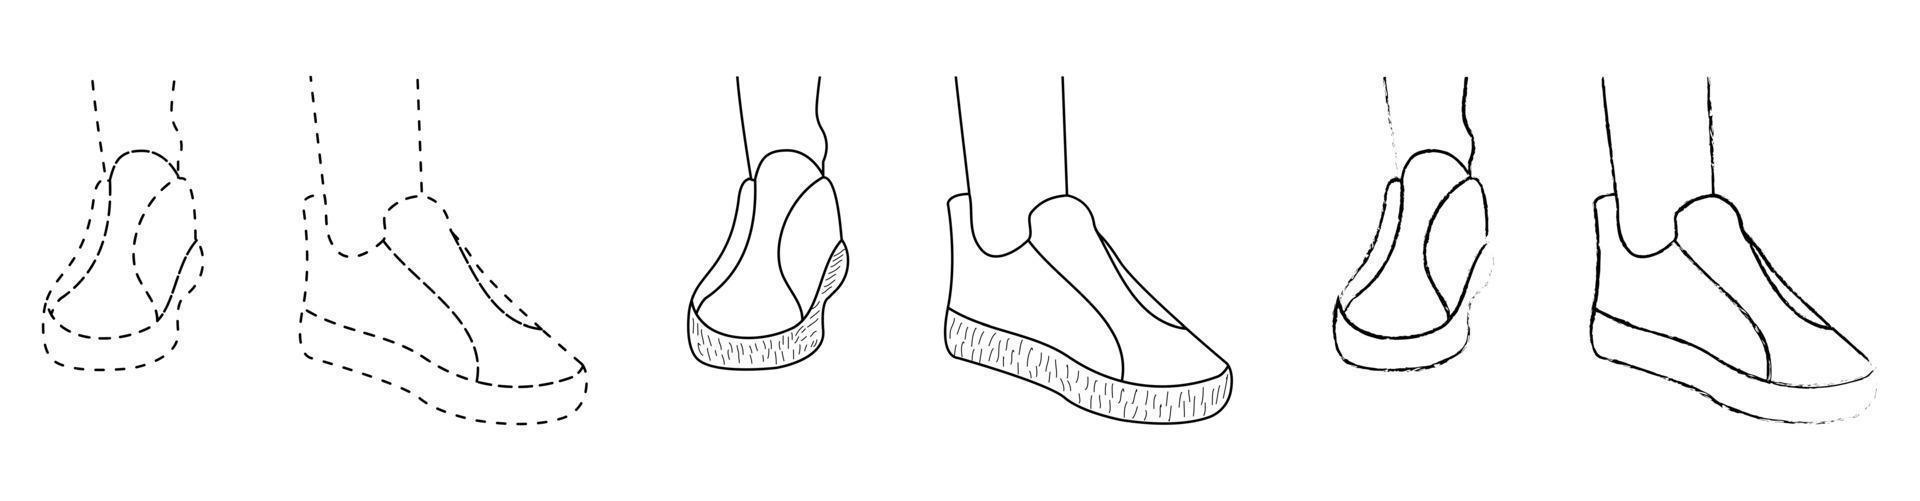 ritning skiss kontur av silhuetten av sport sneakers, sneakers, gummiskor. linjestil och penseldrag vektor